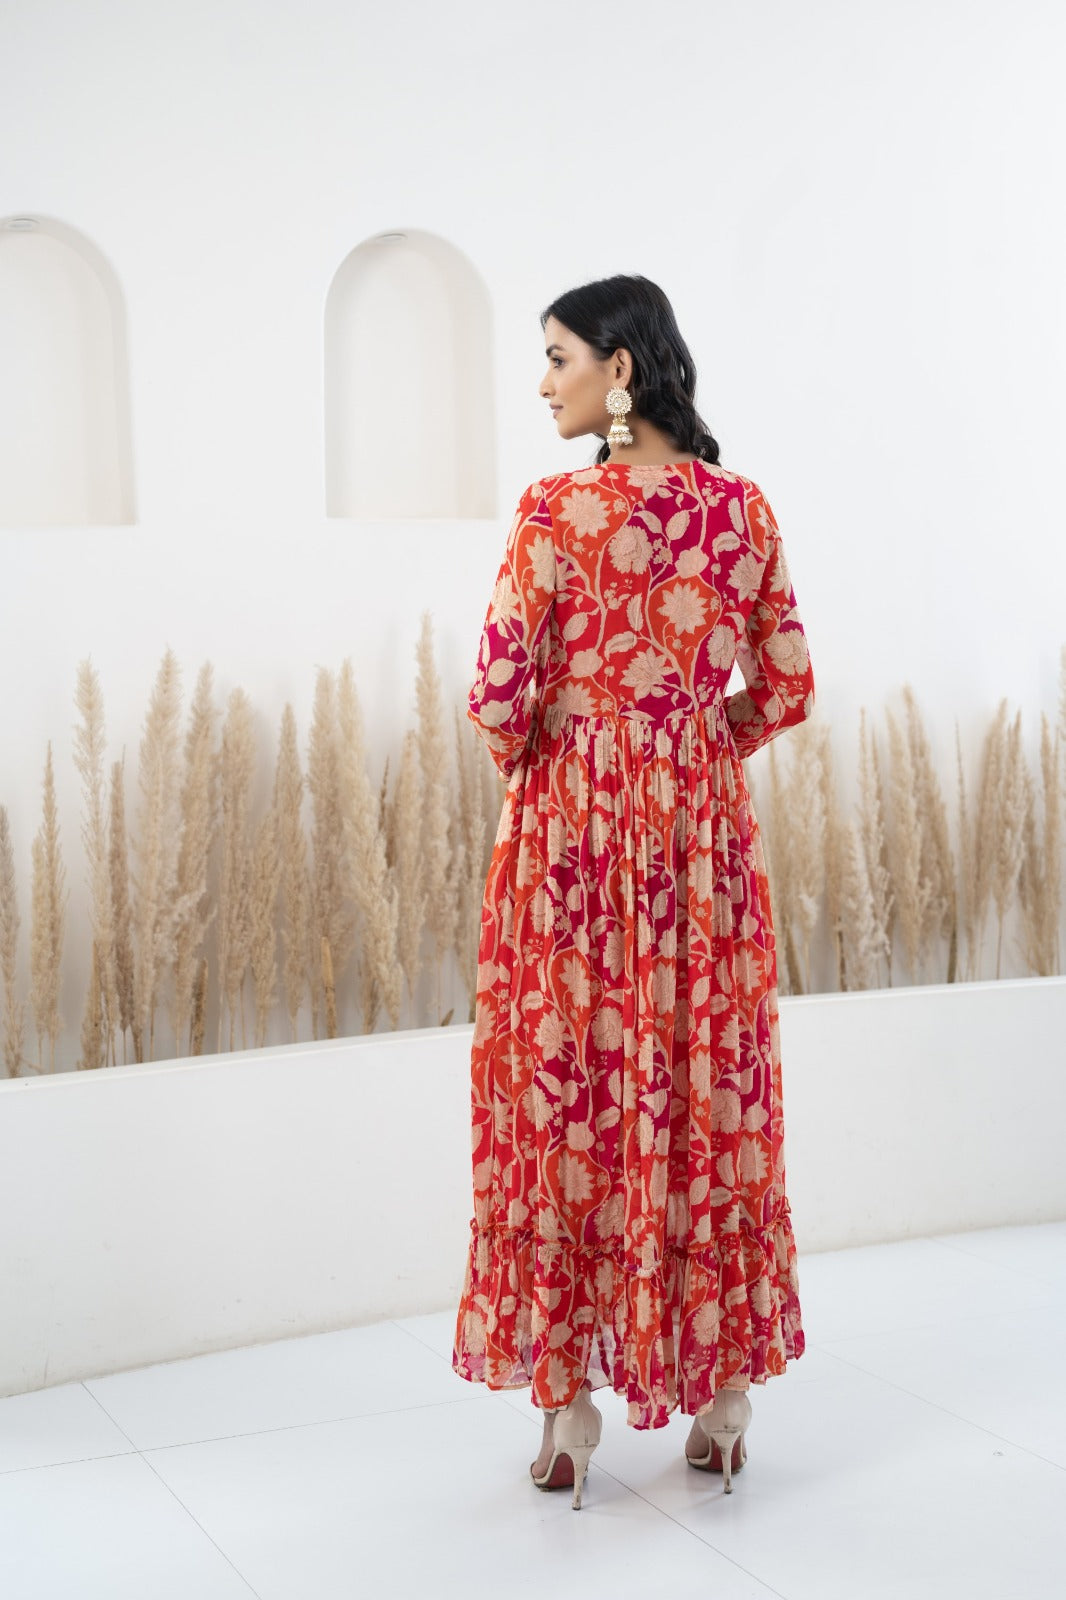 Women's Floral Printed Long Dress by Myshka- 1 pc set